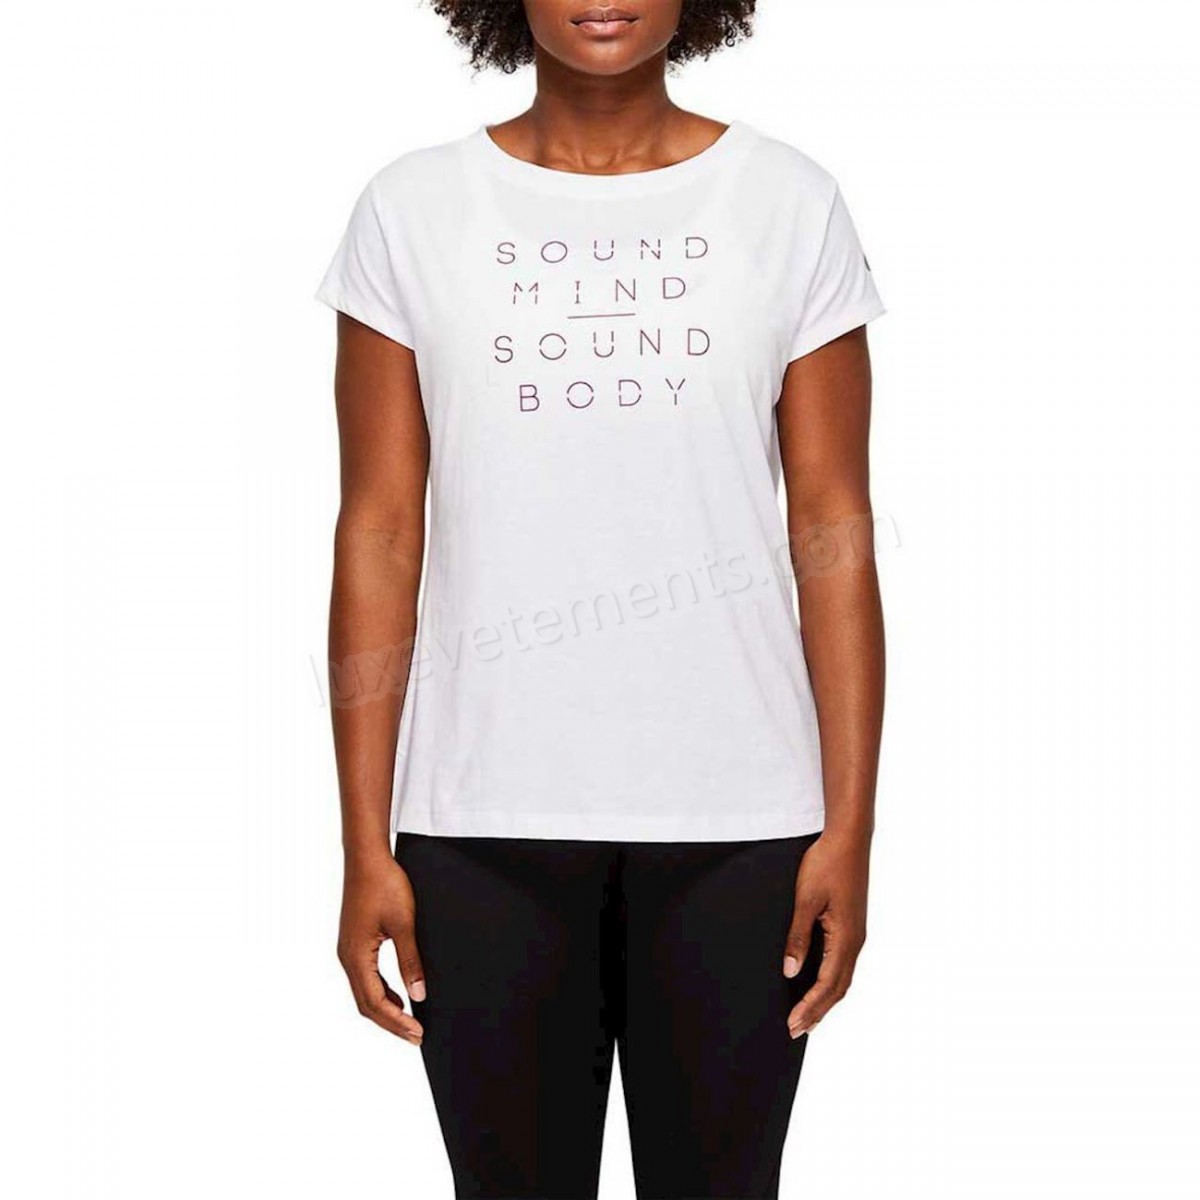 Asics-Fitness femme ASICS T-shirt femme Asics Graphic Vente en ligne - -1